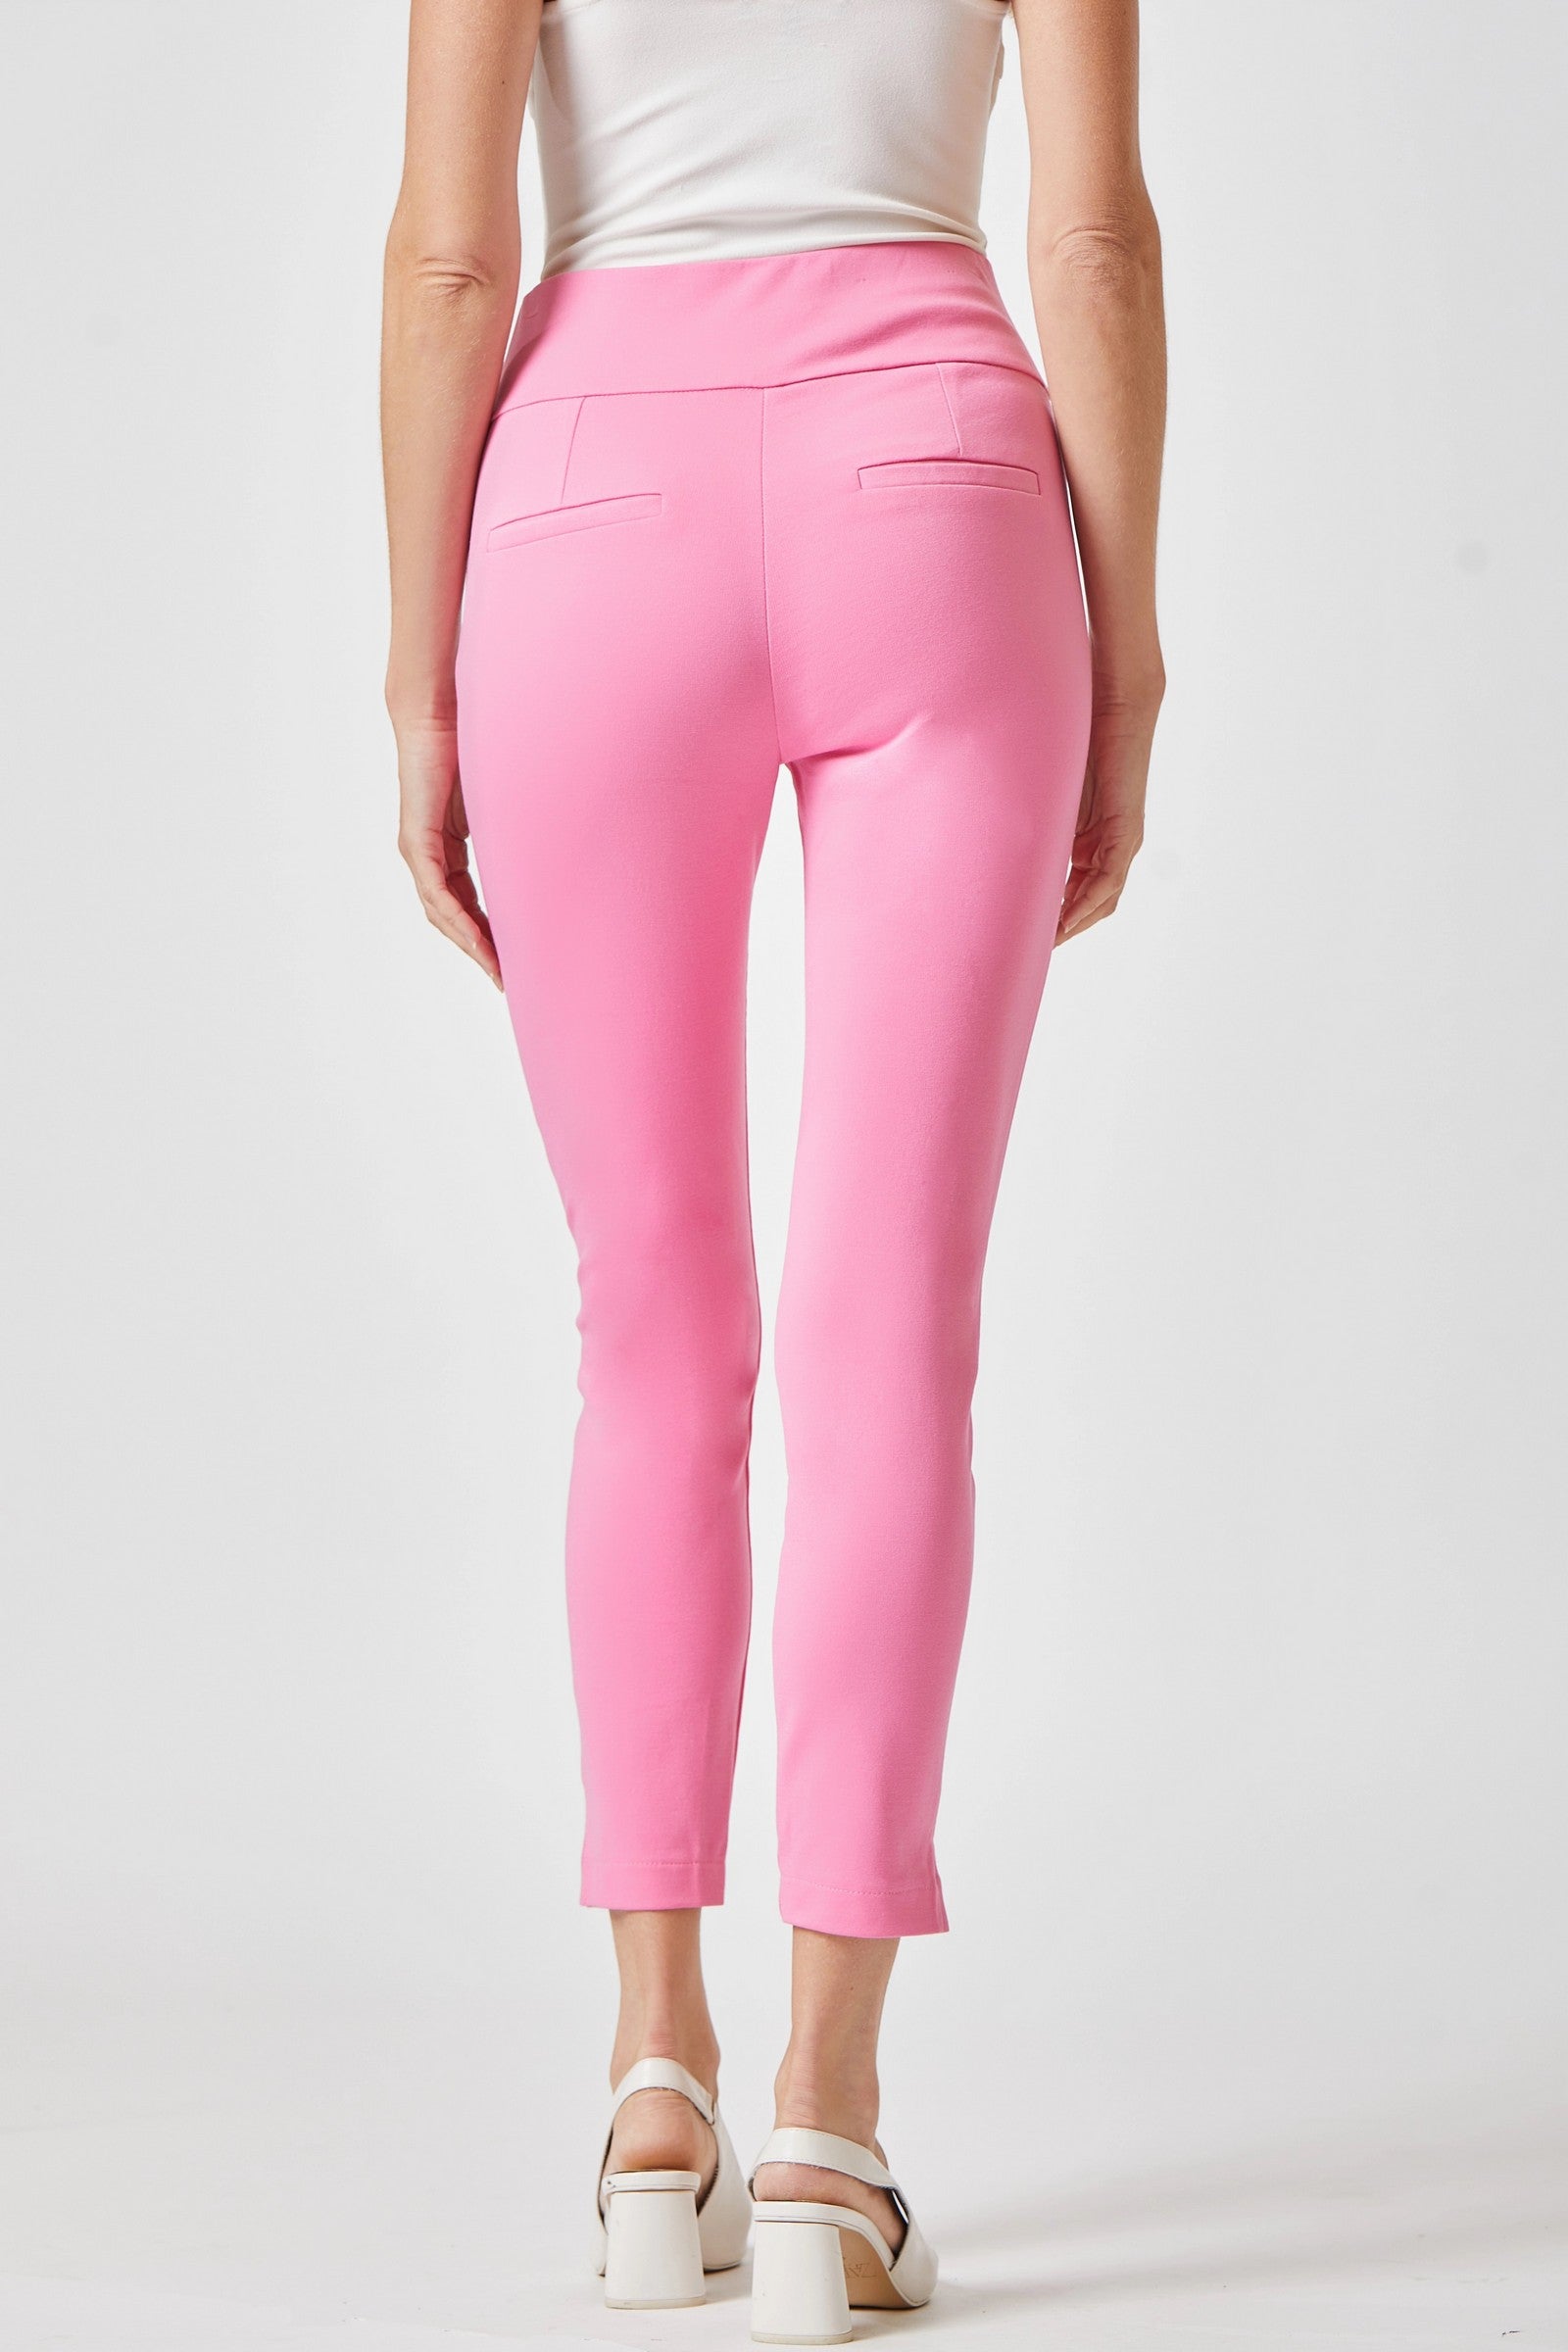 Dear Scarlett Magic Skinny Pants in Twelve Colors 28 inch Inseam Final Sale Ave Shops